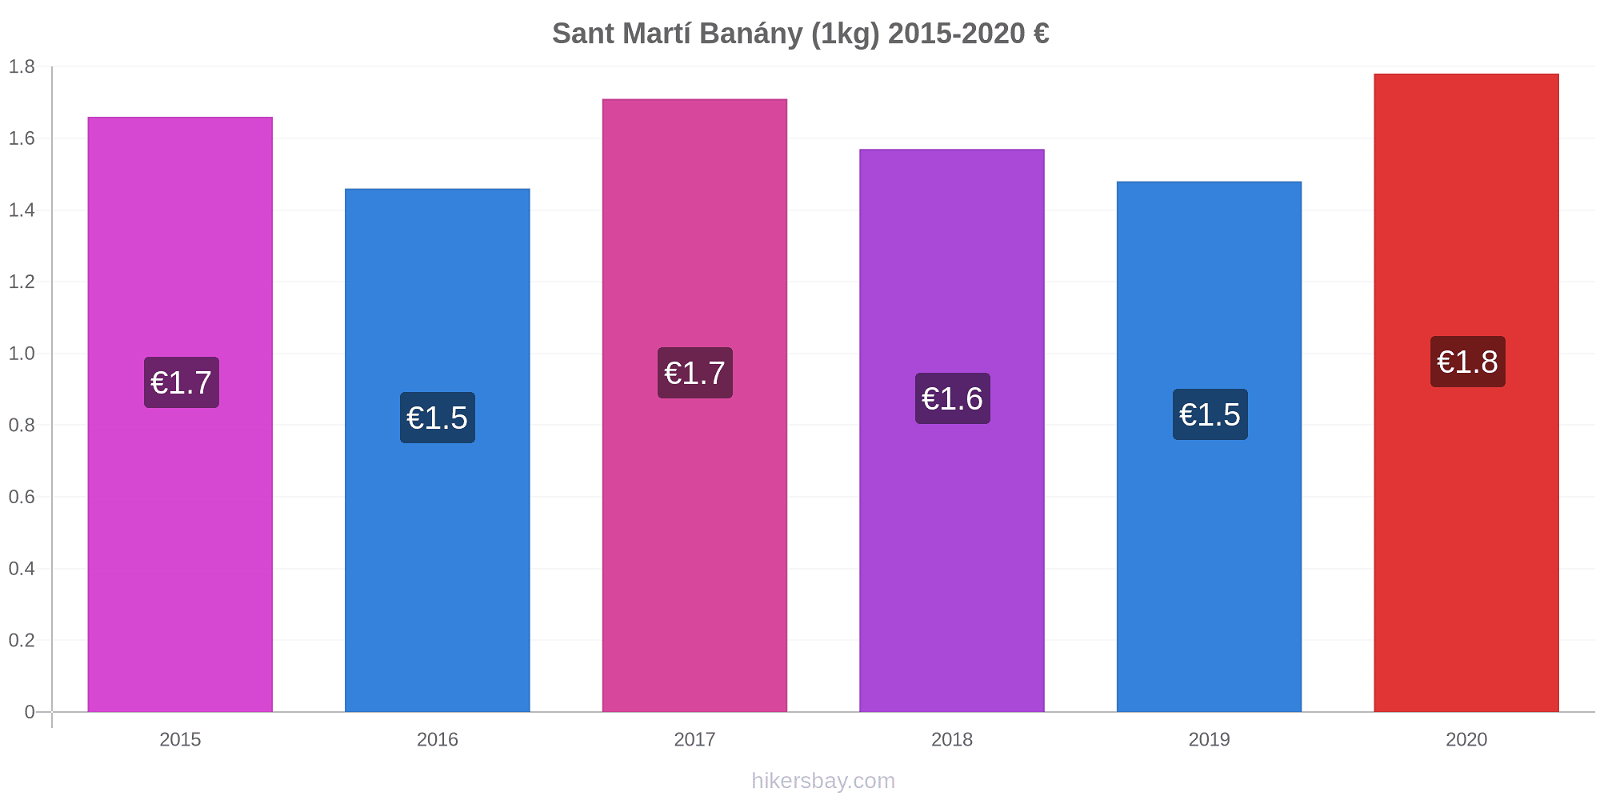 Sant Martí změny cen Banány (1kg) hikersbay.com